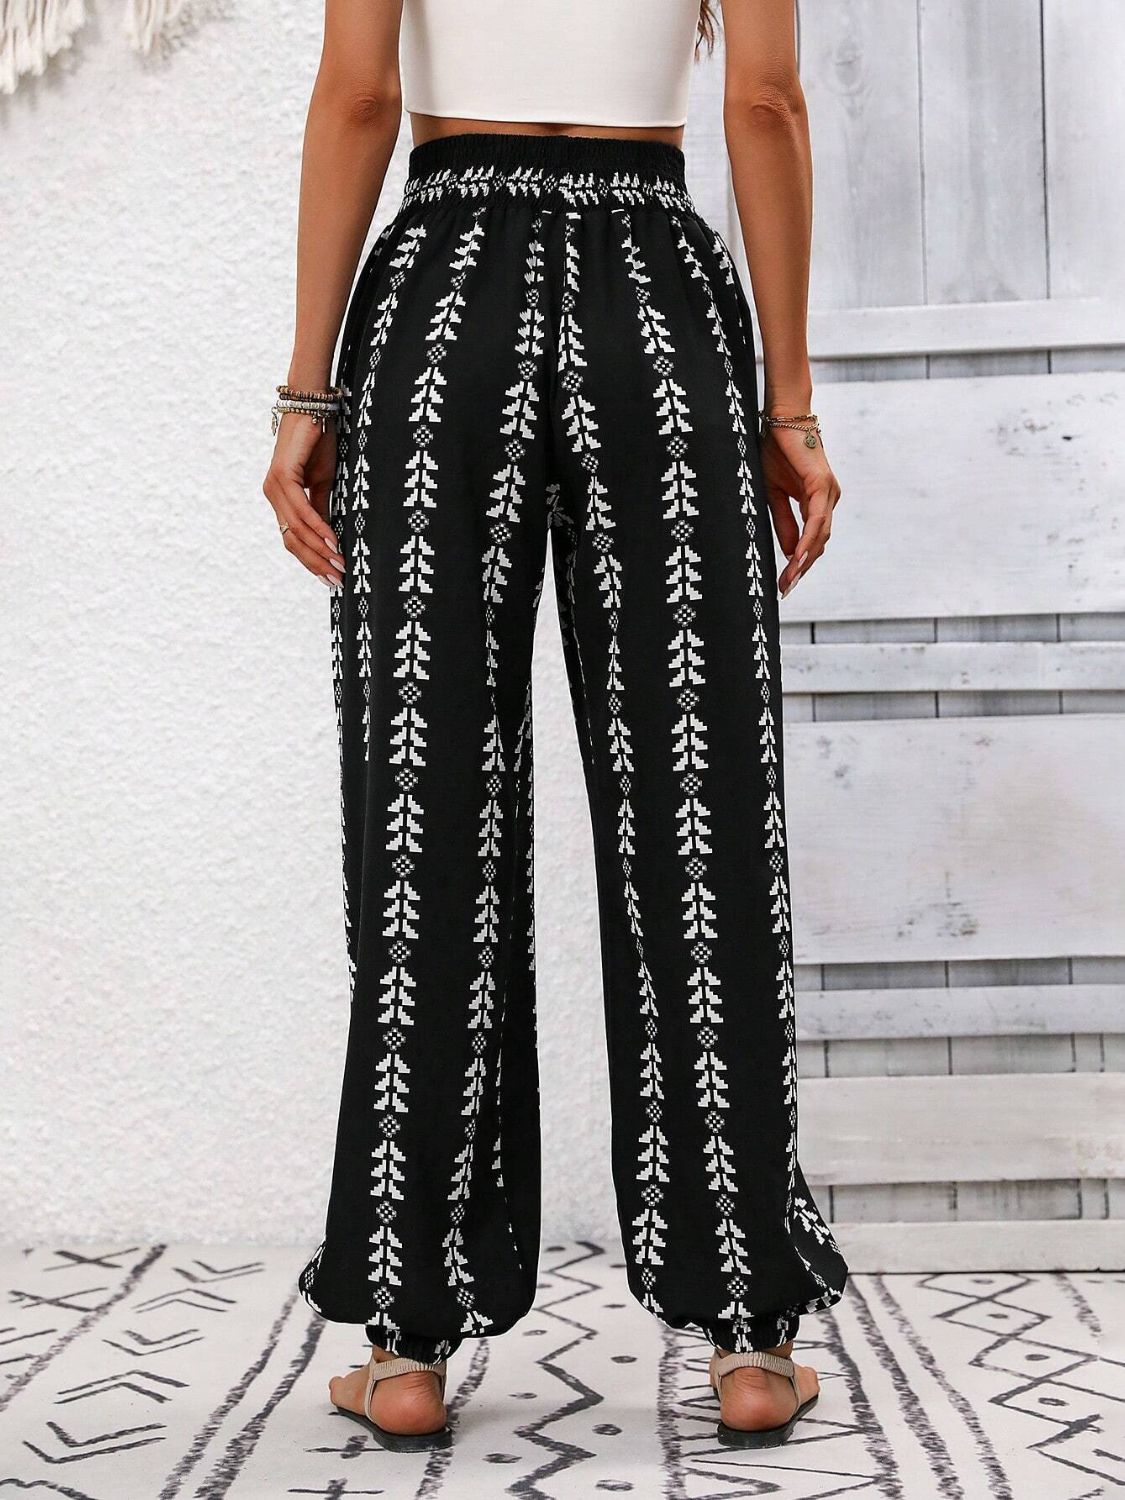 TEEK - Tied Printed High Waist Pants PANTS TEEK Trend   